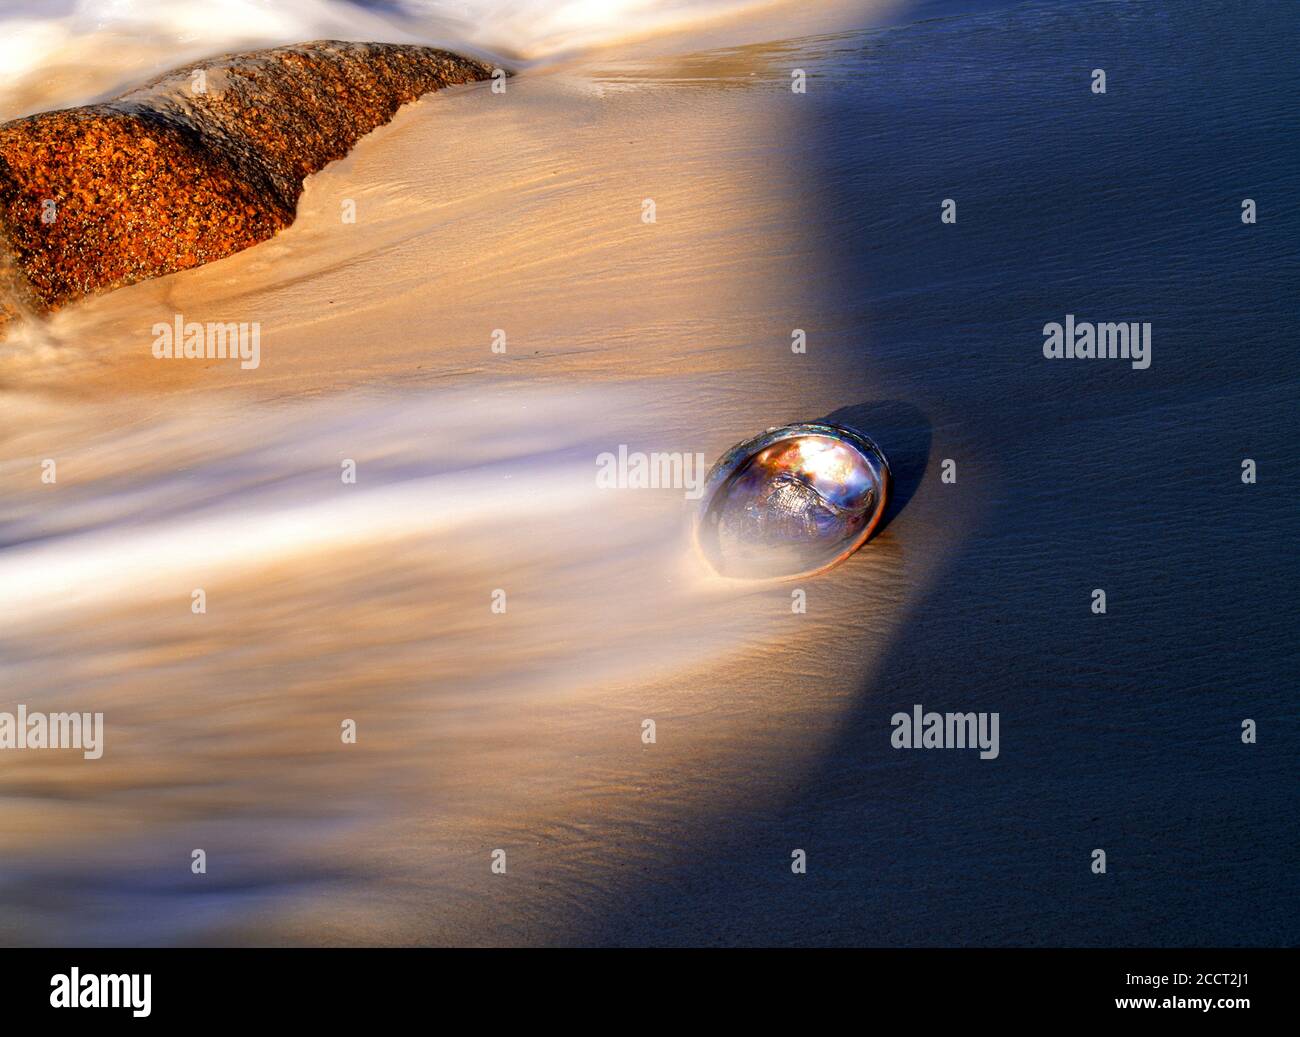 Abalone shell Haliotis iris on wave swept sandy shore at sunrise Stock Photo